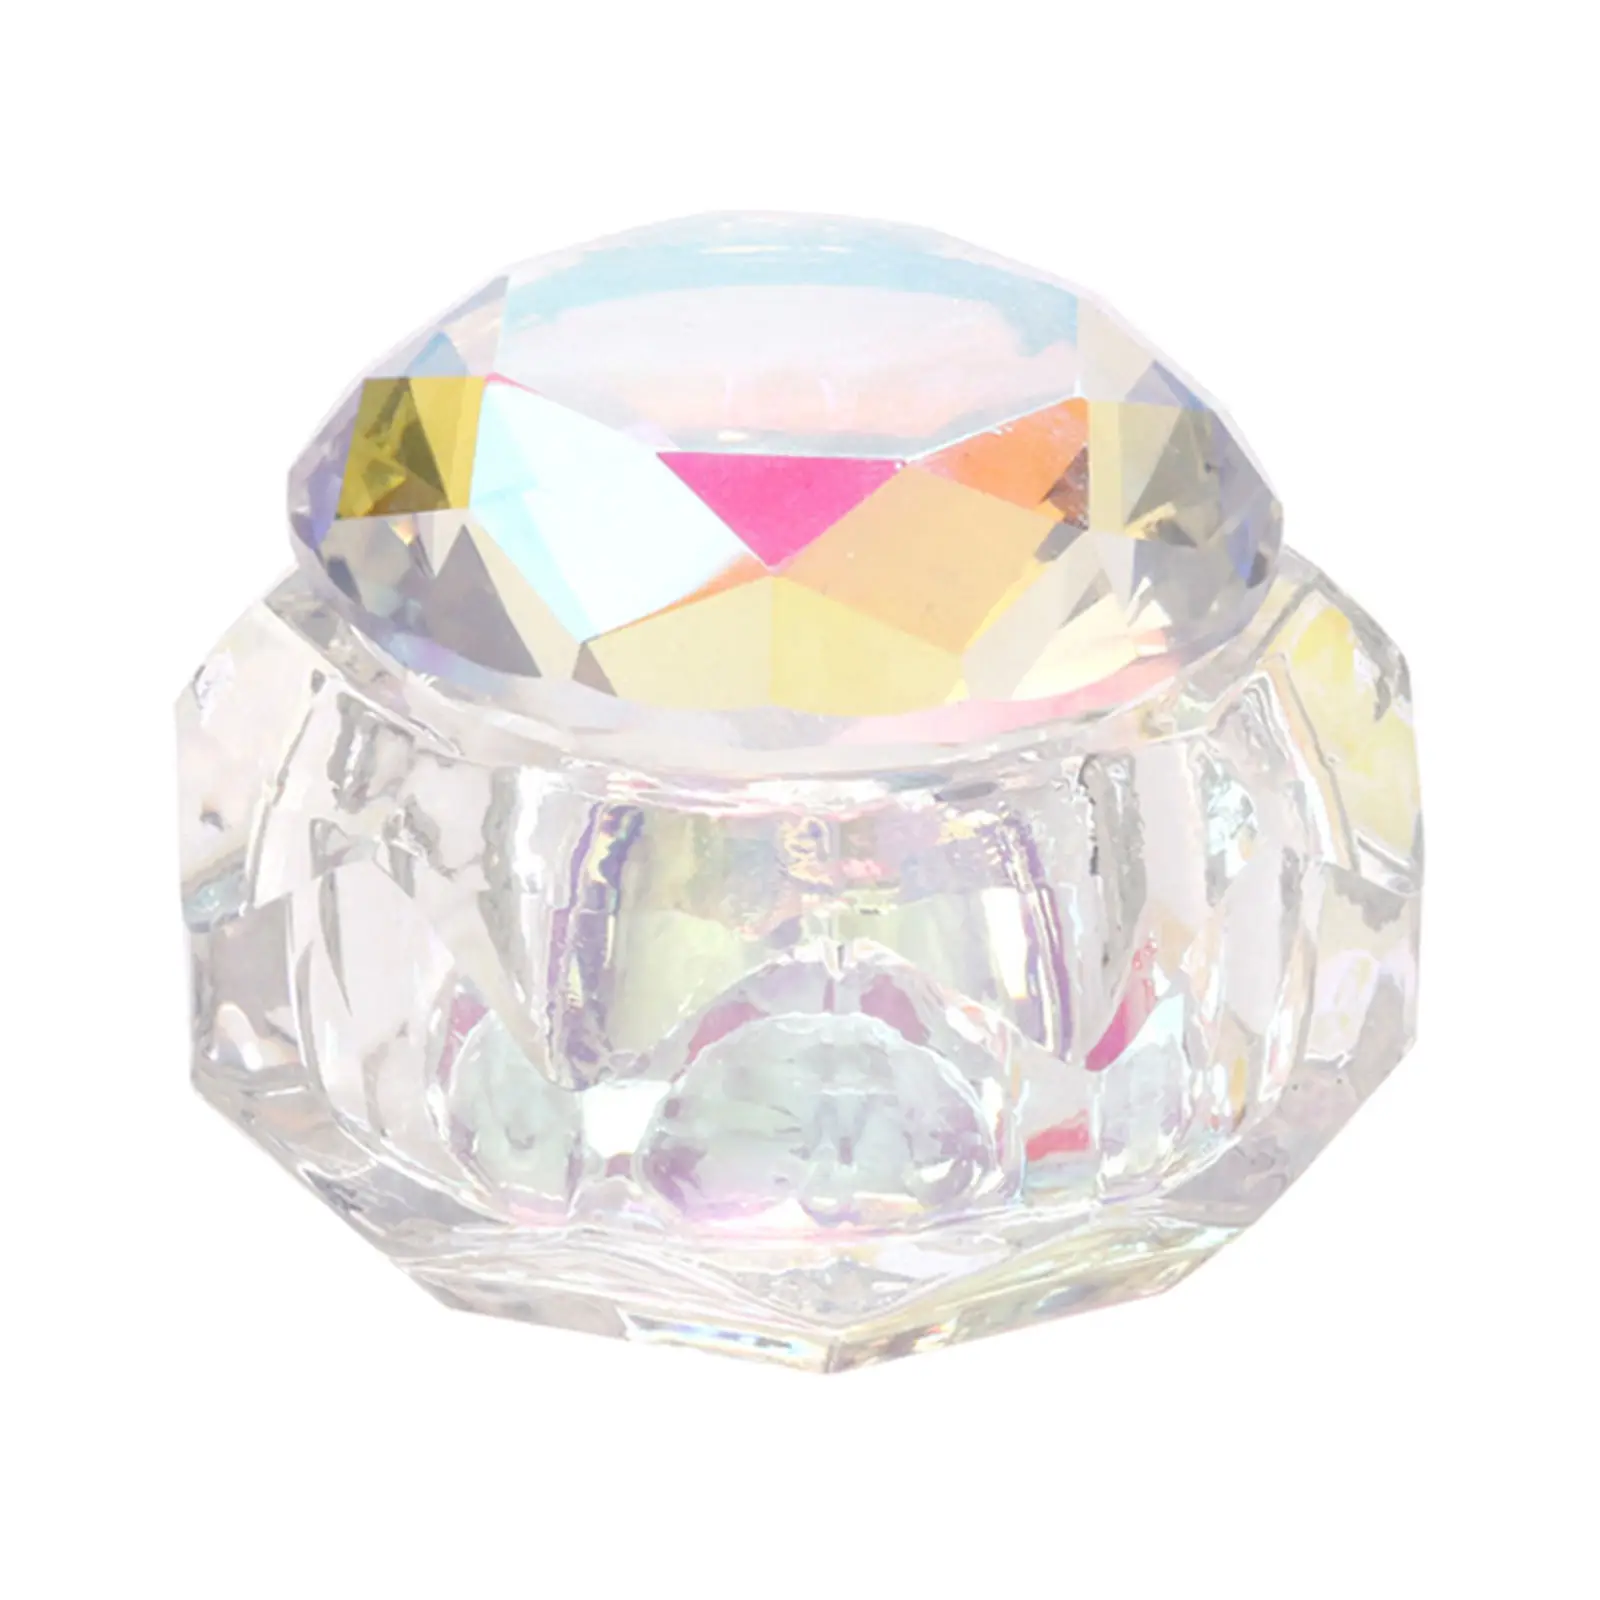 Crystal Nail Art Dappen DISH Bowl Colorful Crystal DISH ,lid Bowl Cup, Holder